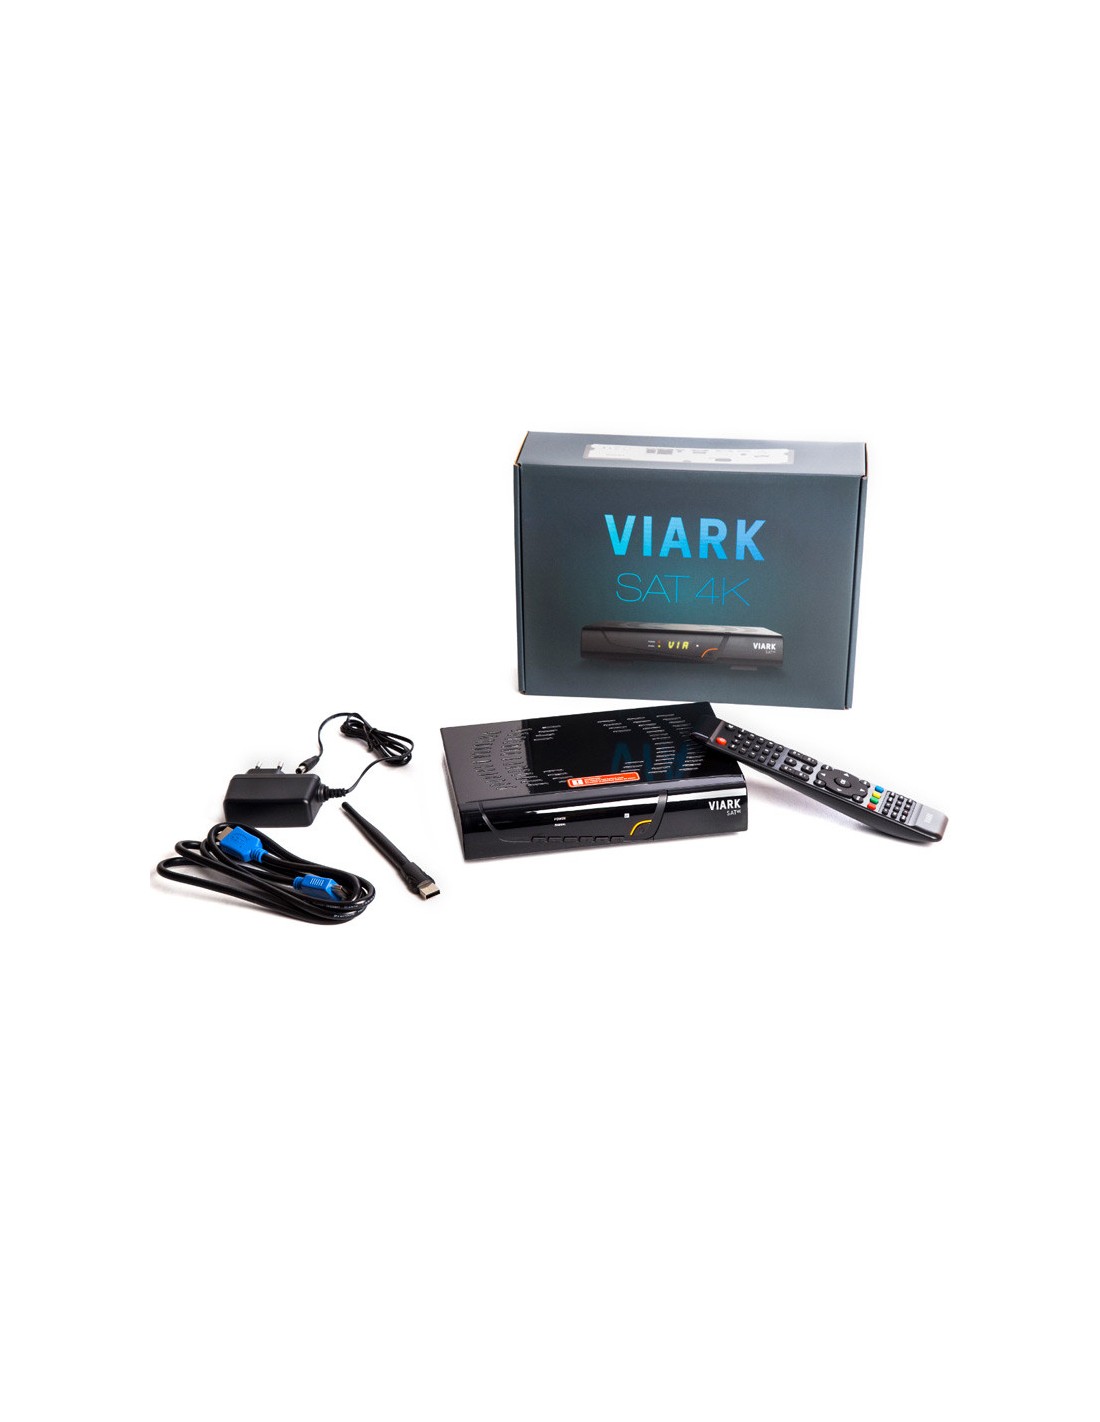 Viark SAT 4K Receptor satélite